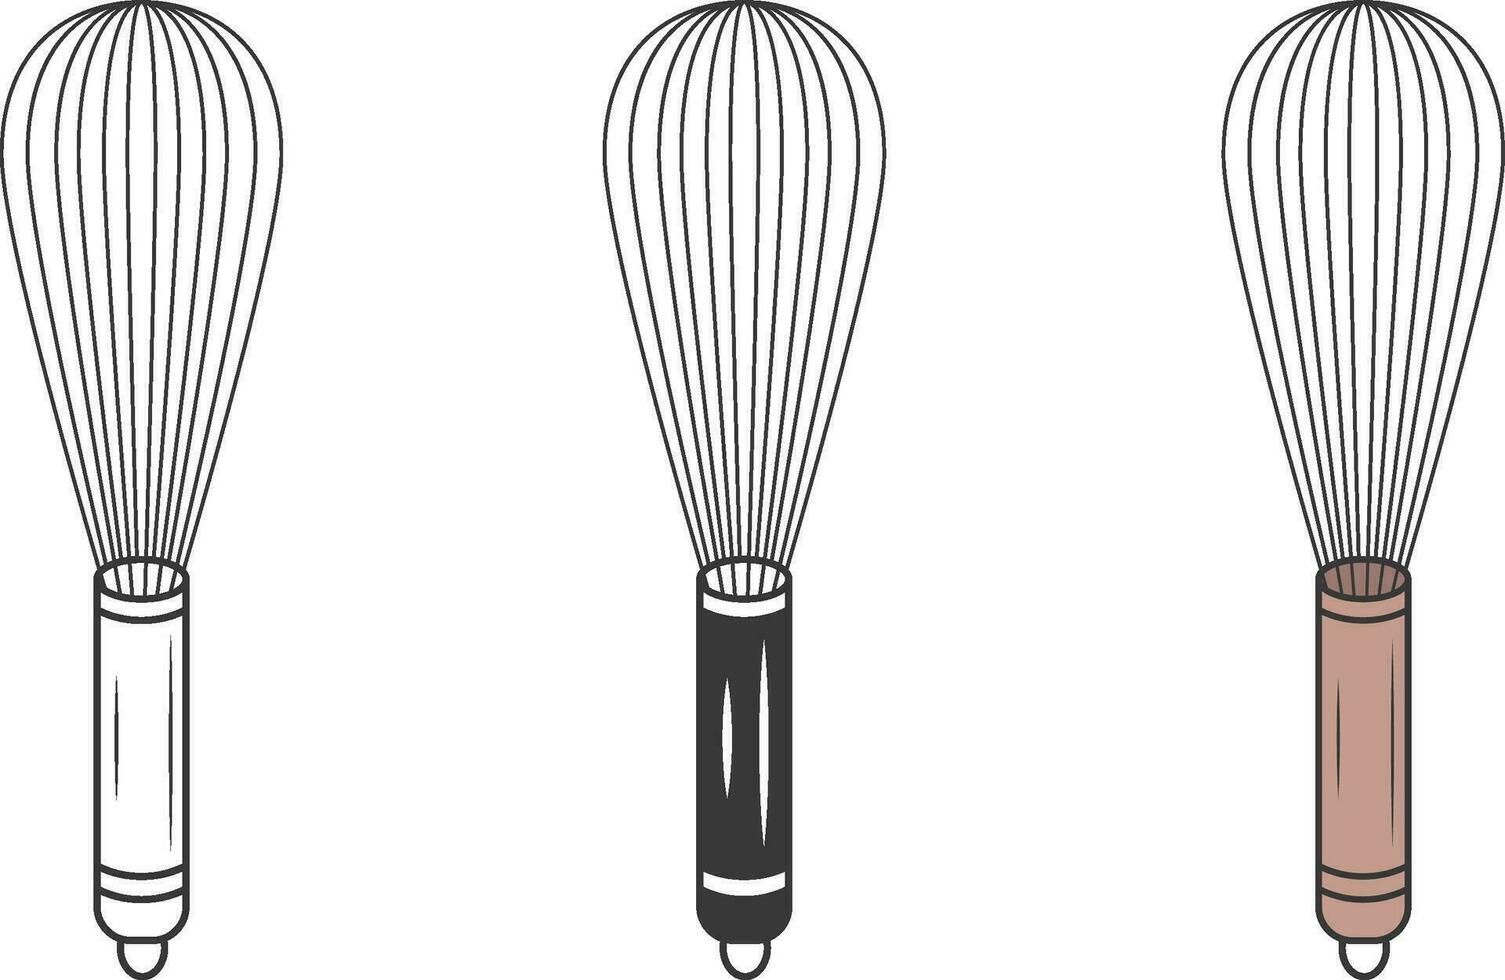 Whisk Vector, Whisk illustration, Whisk Silhouette, Restaurant Equipment, Cooking Equipment, Whisk Clip Art, Utensil Silhouette vector